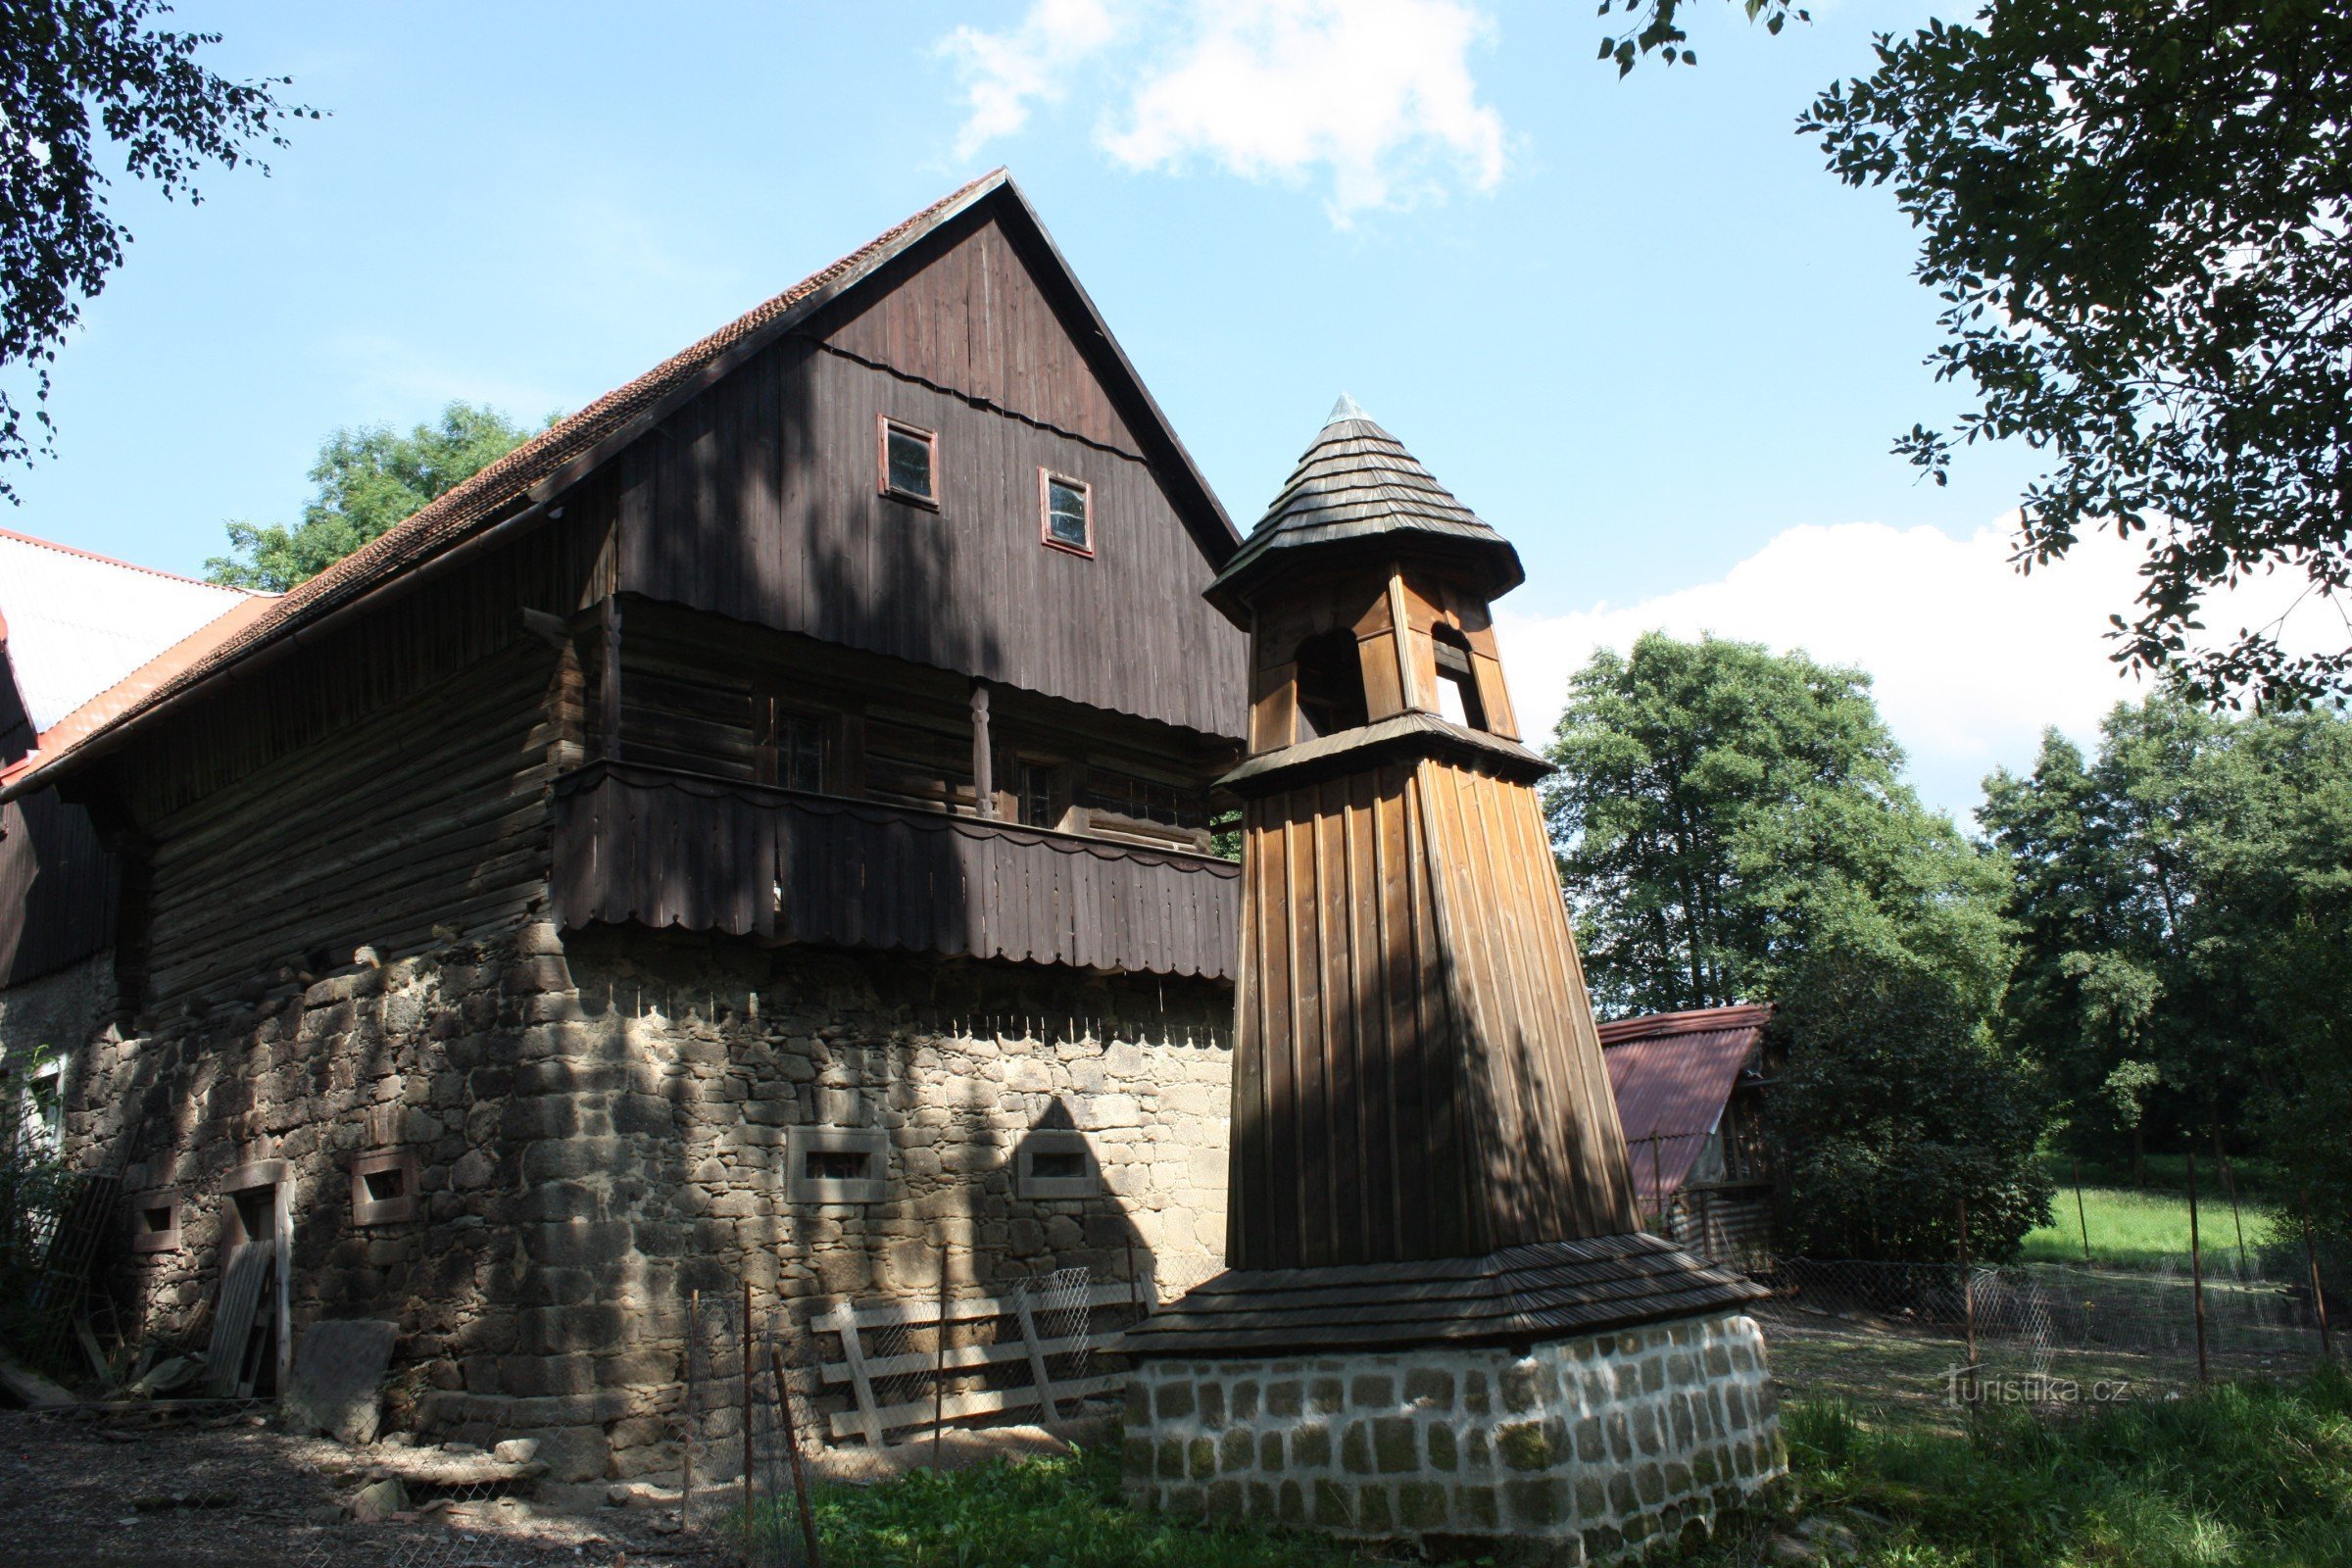 Wooden belfry in Škodějov in the Semila region